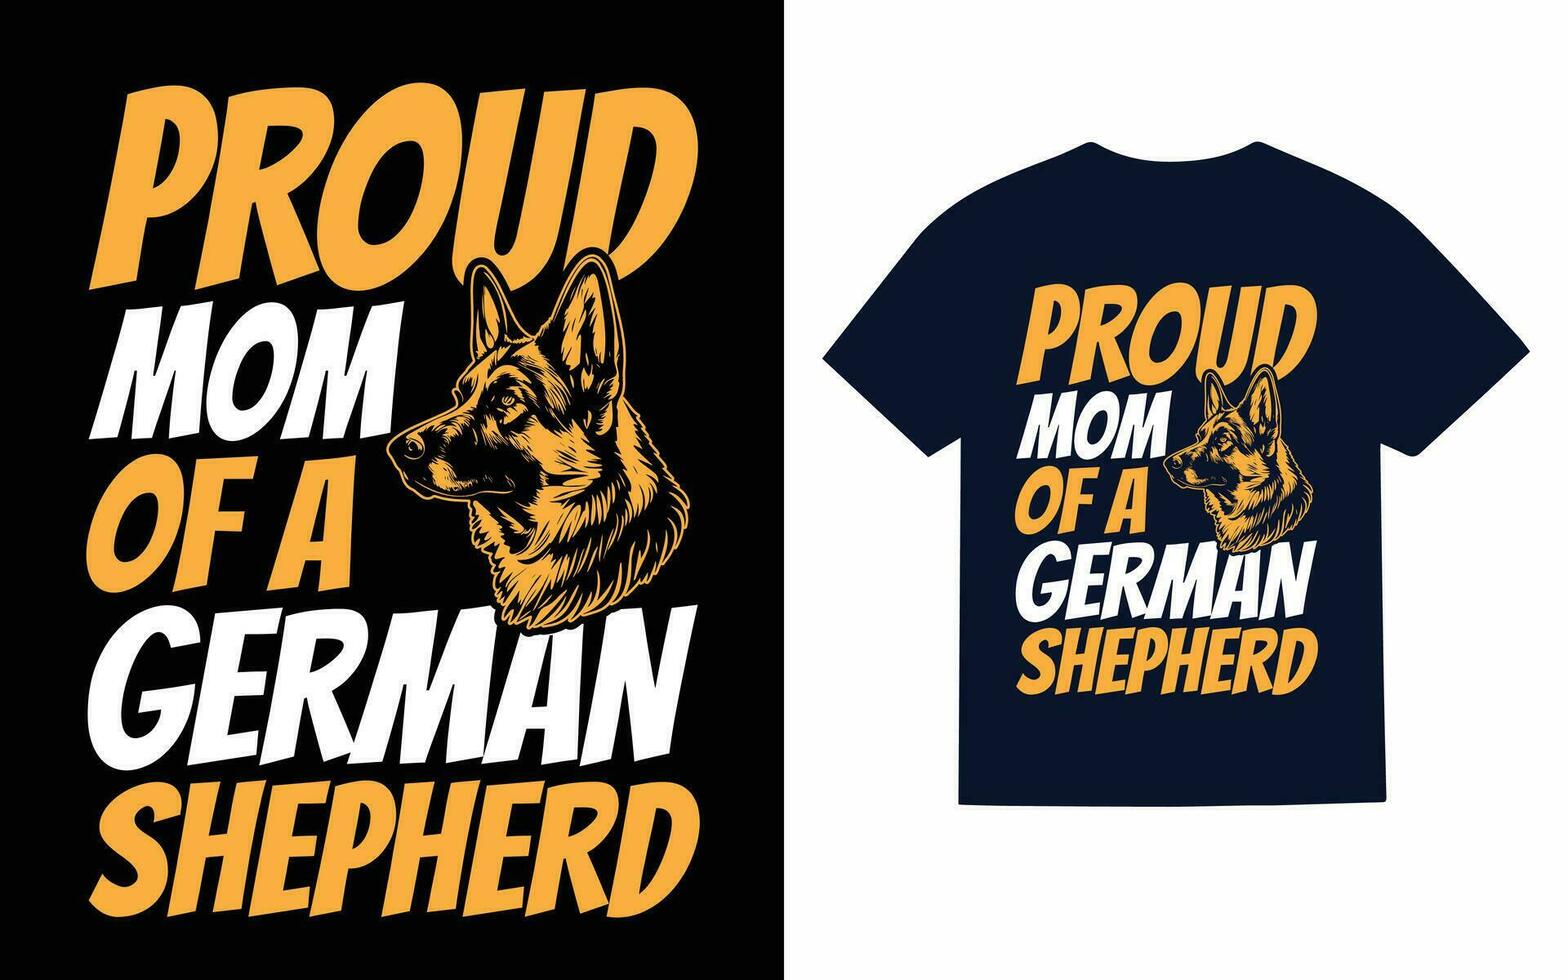 German Shepherd Dog Typography T-Shirt Design Vector